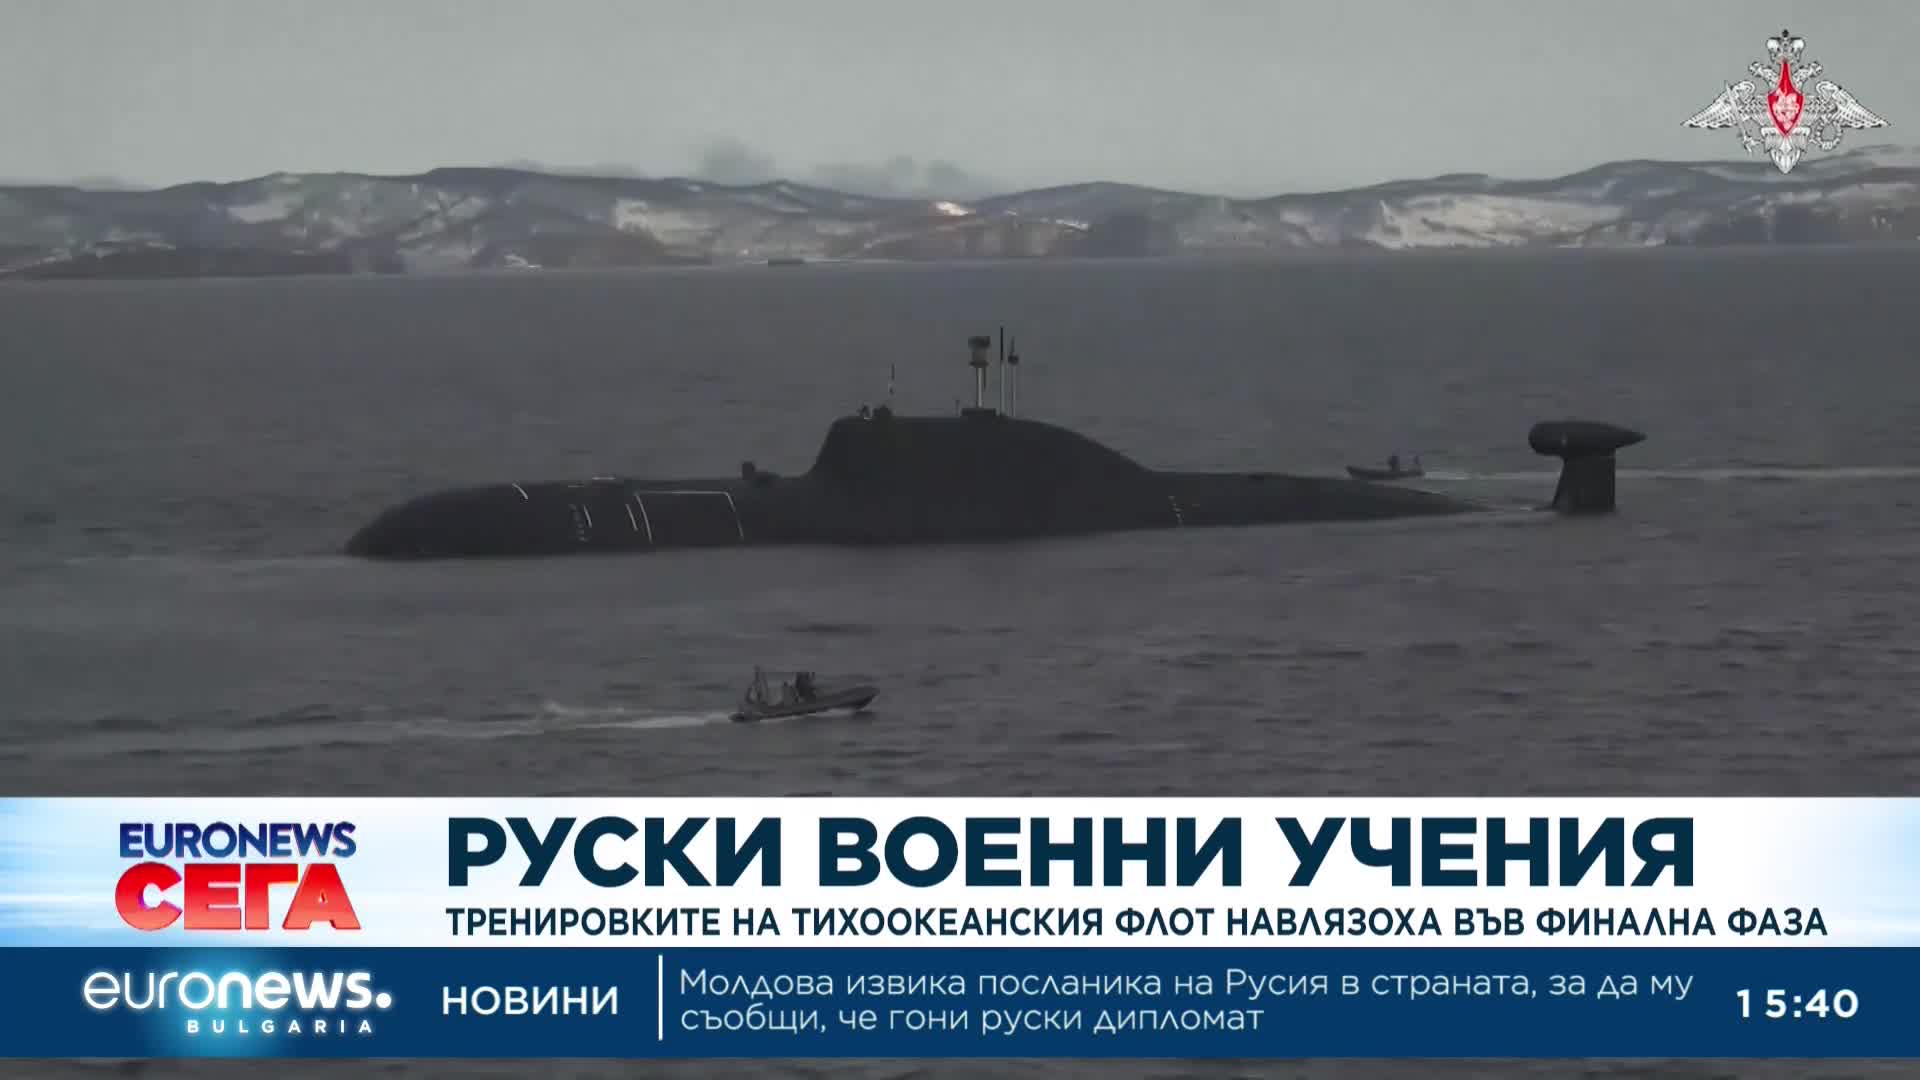 Тренировките на руския Тихоокеански флот навлязоха във финална фаза